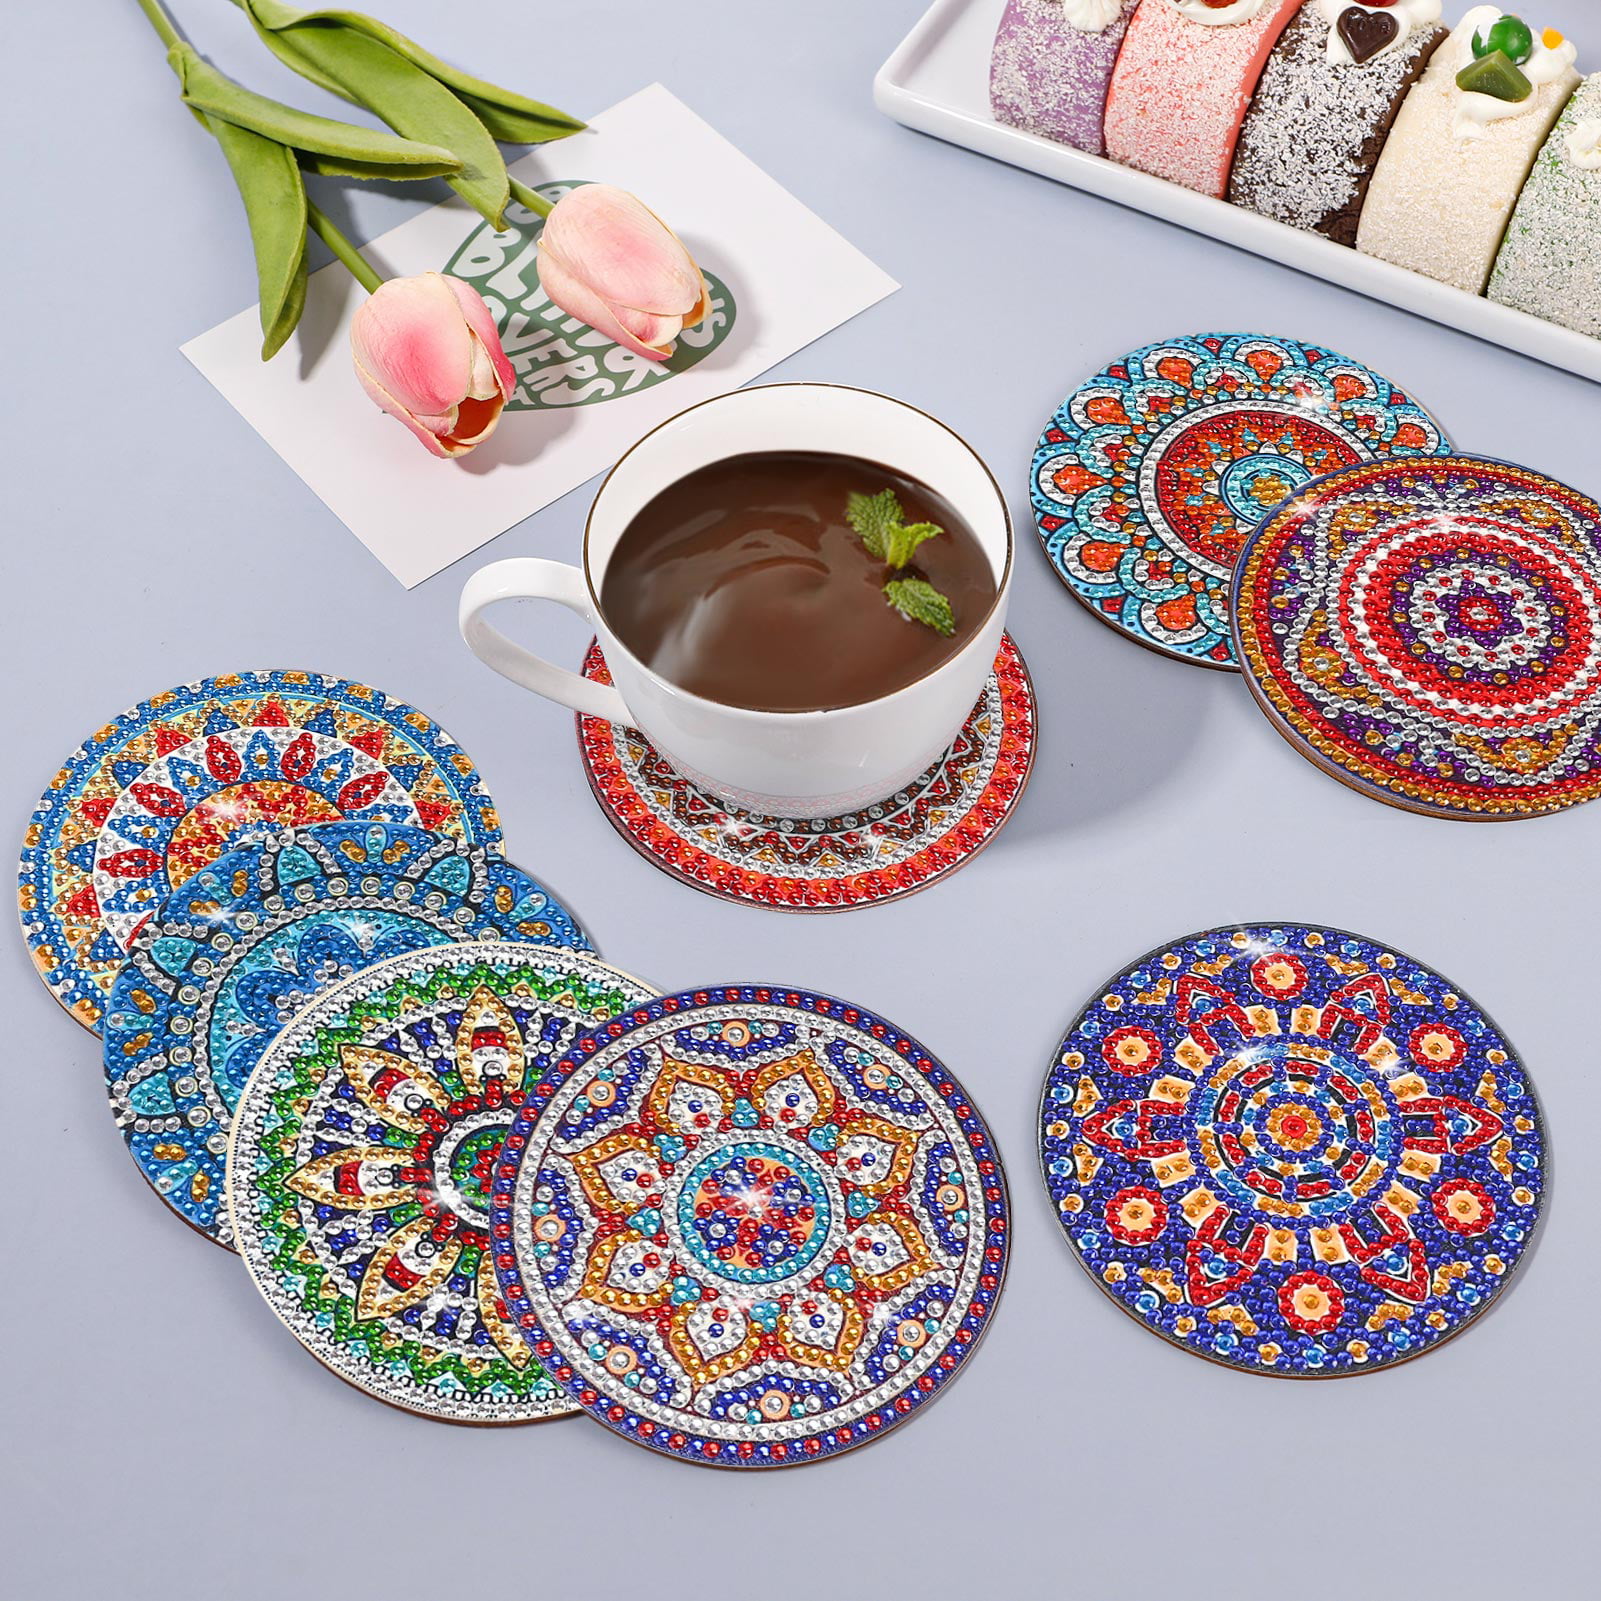 Harupink 8 Pcs DIY Diamond Drawing Coasters Kit Mandala Coasters